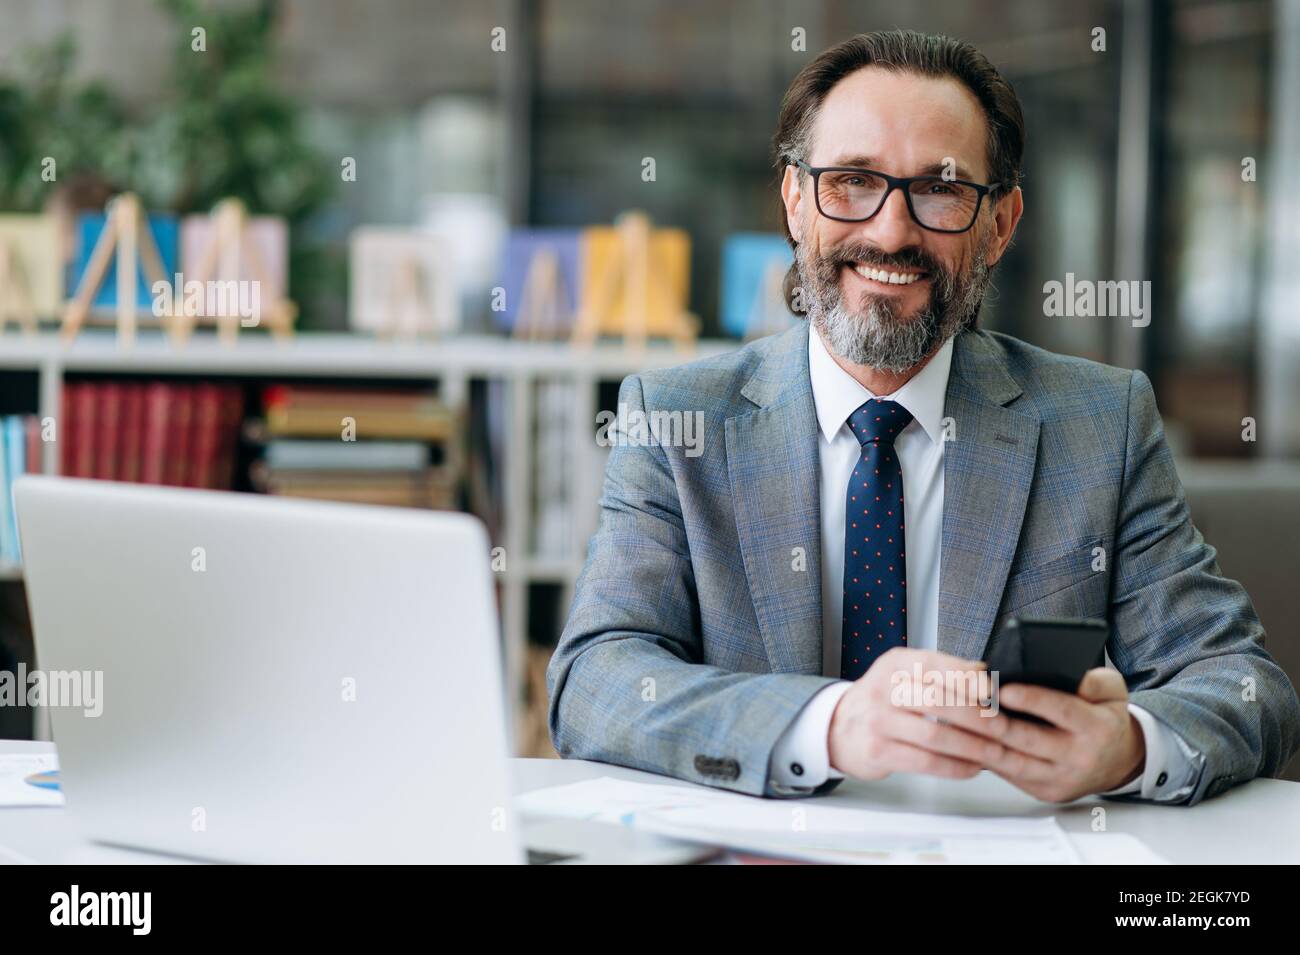 Un uomo d'affari sorridente dai capelli grigi guarda direttamente la telecamera, si siede alla scrivania. Felice dipendente maschio influente sta usando smartphone, e sorrisi amichevoli Foto Stock